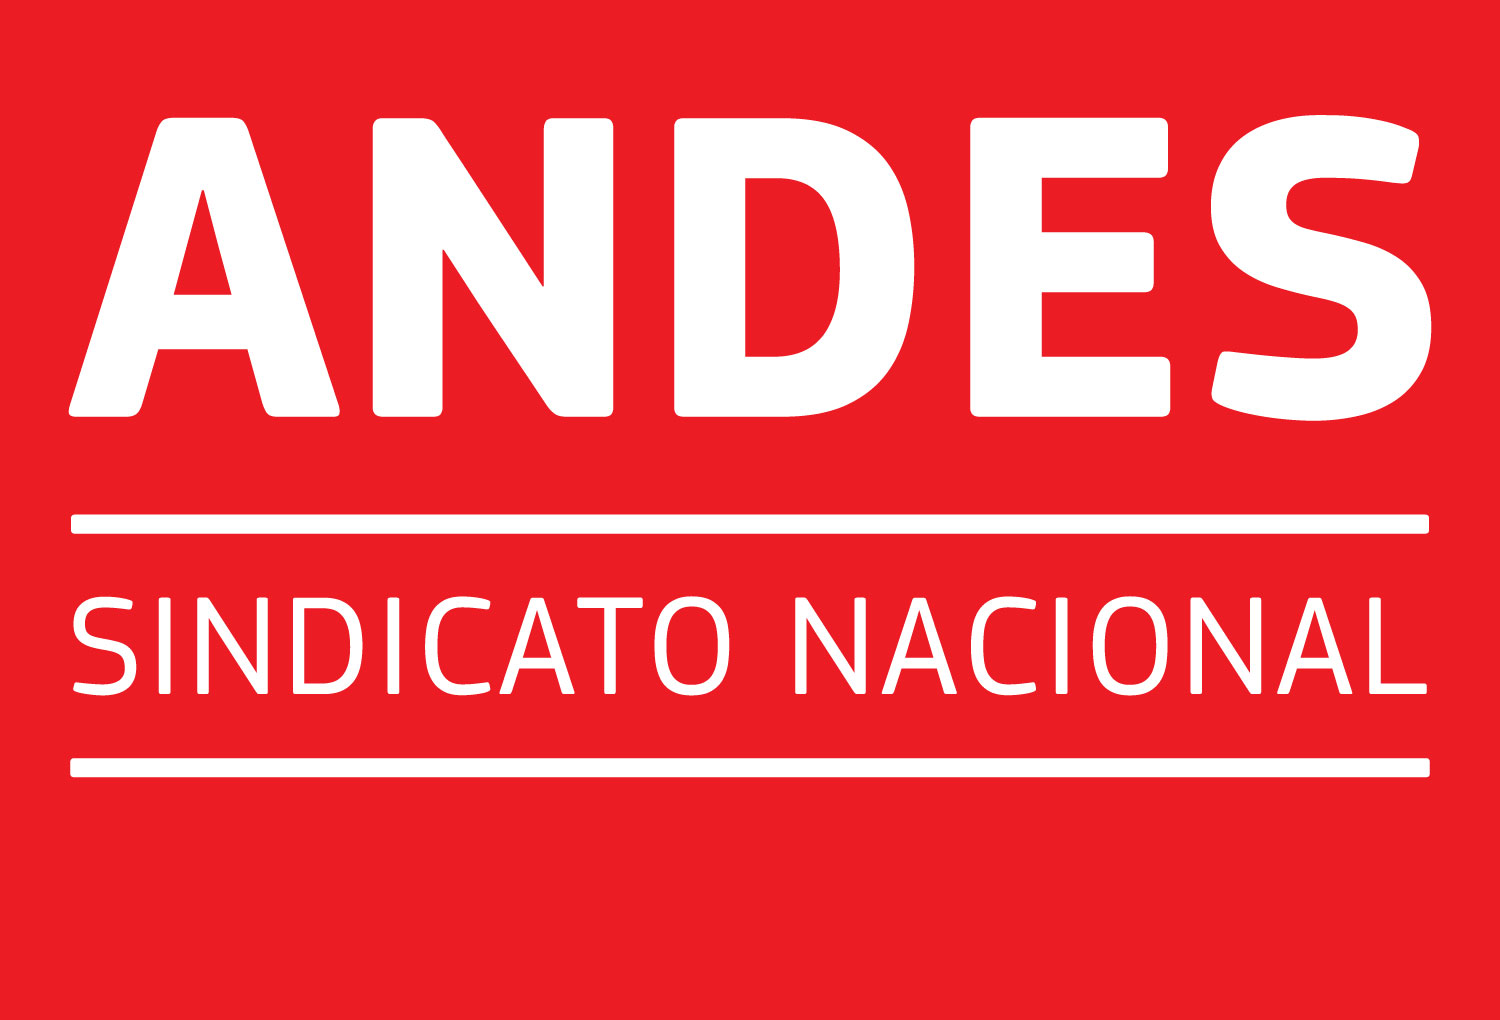 Andes Sindicato Nacional